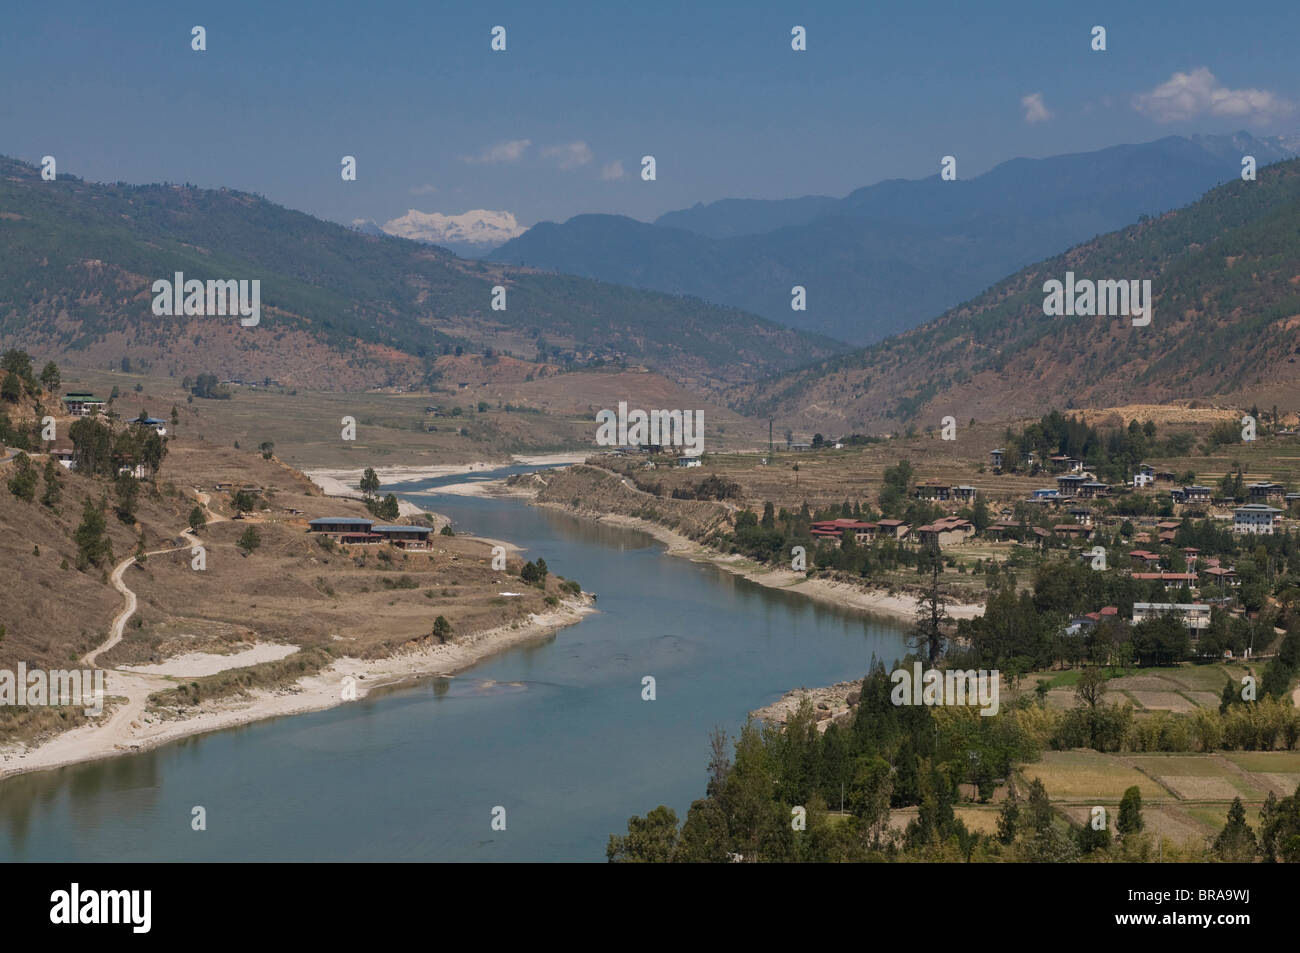 The Punak Tsang Chu River in the wide valley at Wangdue Phodrang, Bhutan, Asia Stock Photo